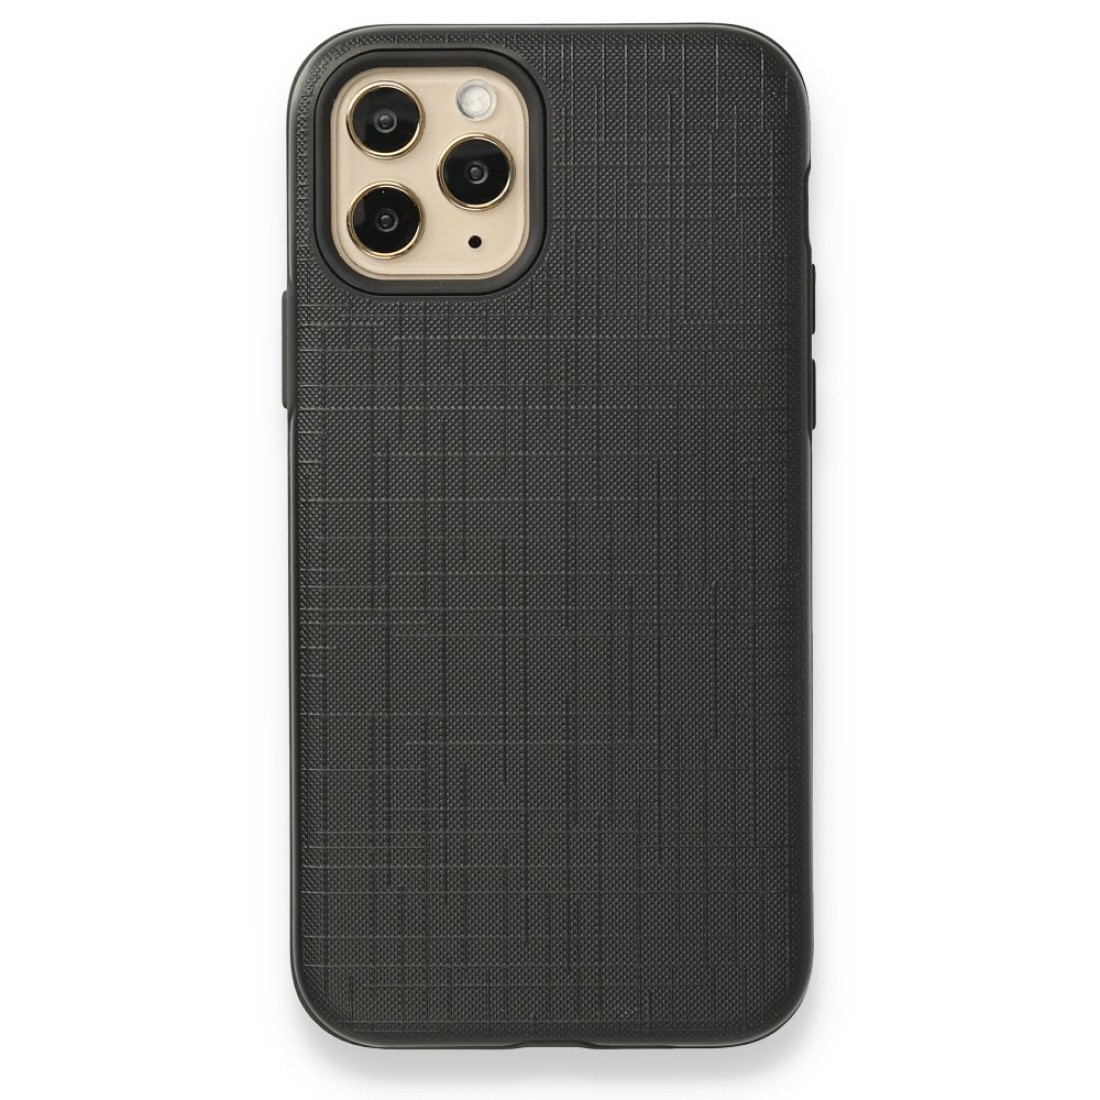 Apple iPhone 11 Pro Max Kılıf YouYou Silikon Kapak - Siyah